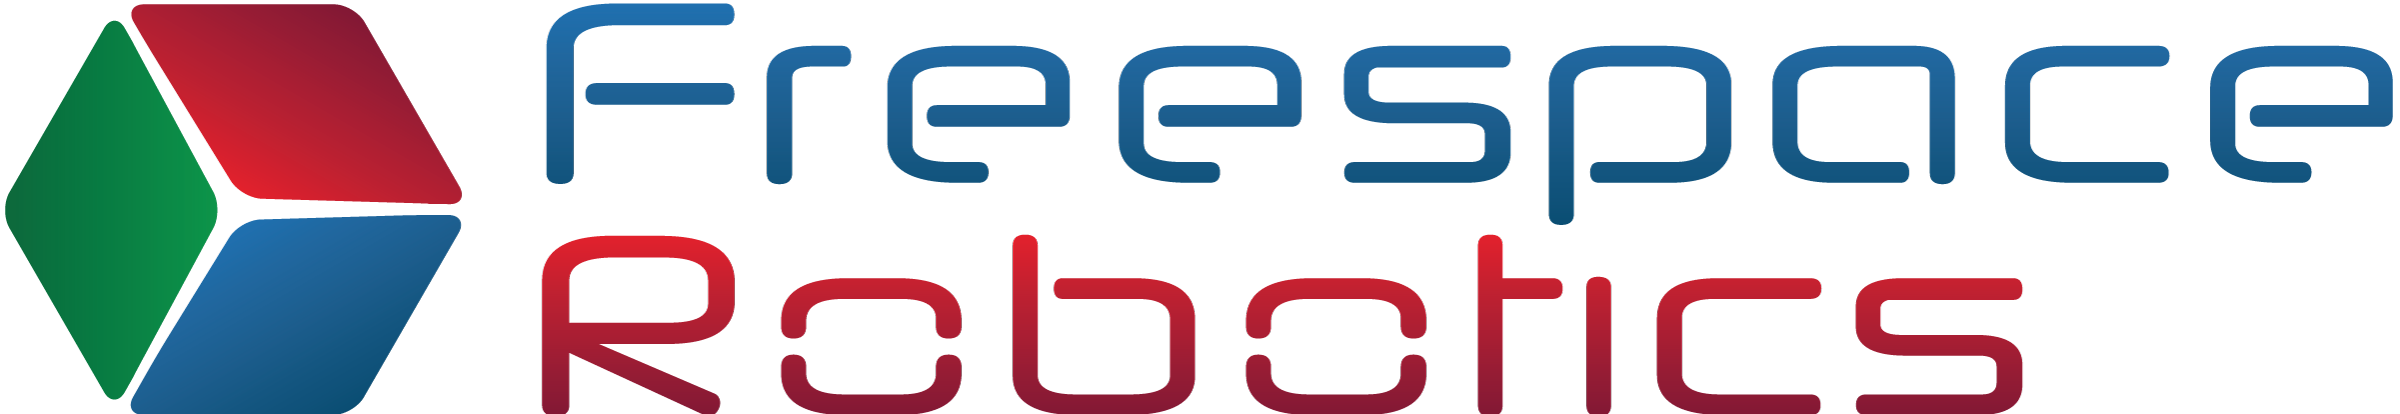 Fresspace Logo large